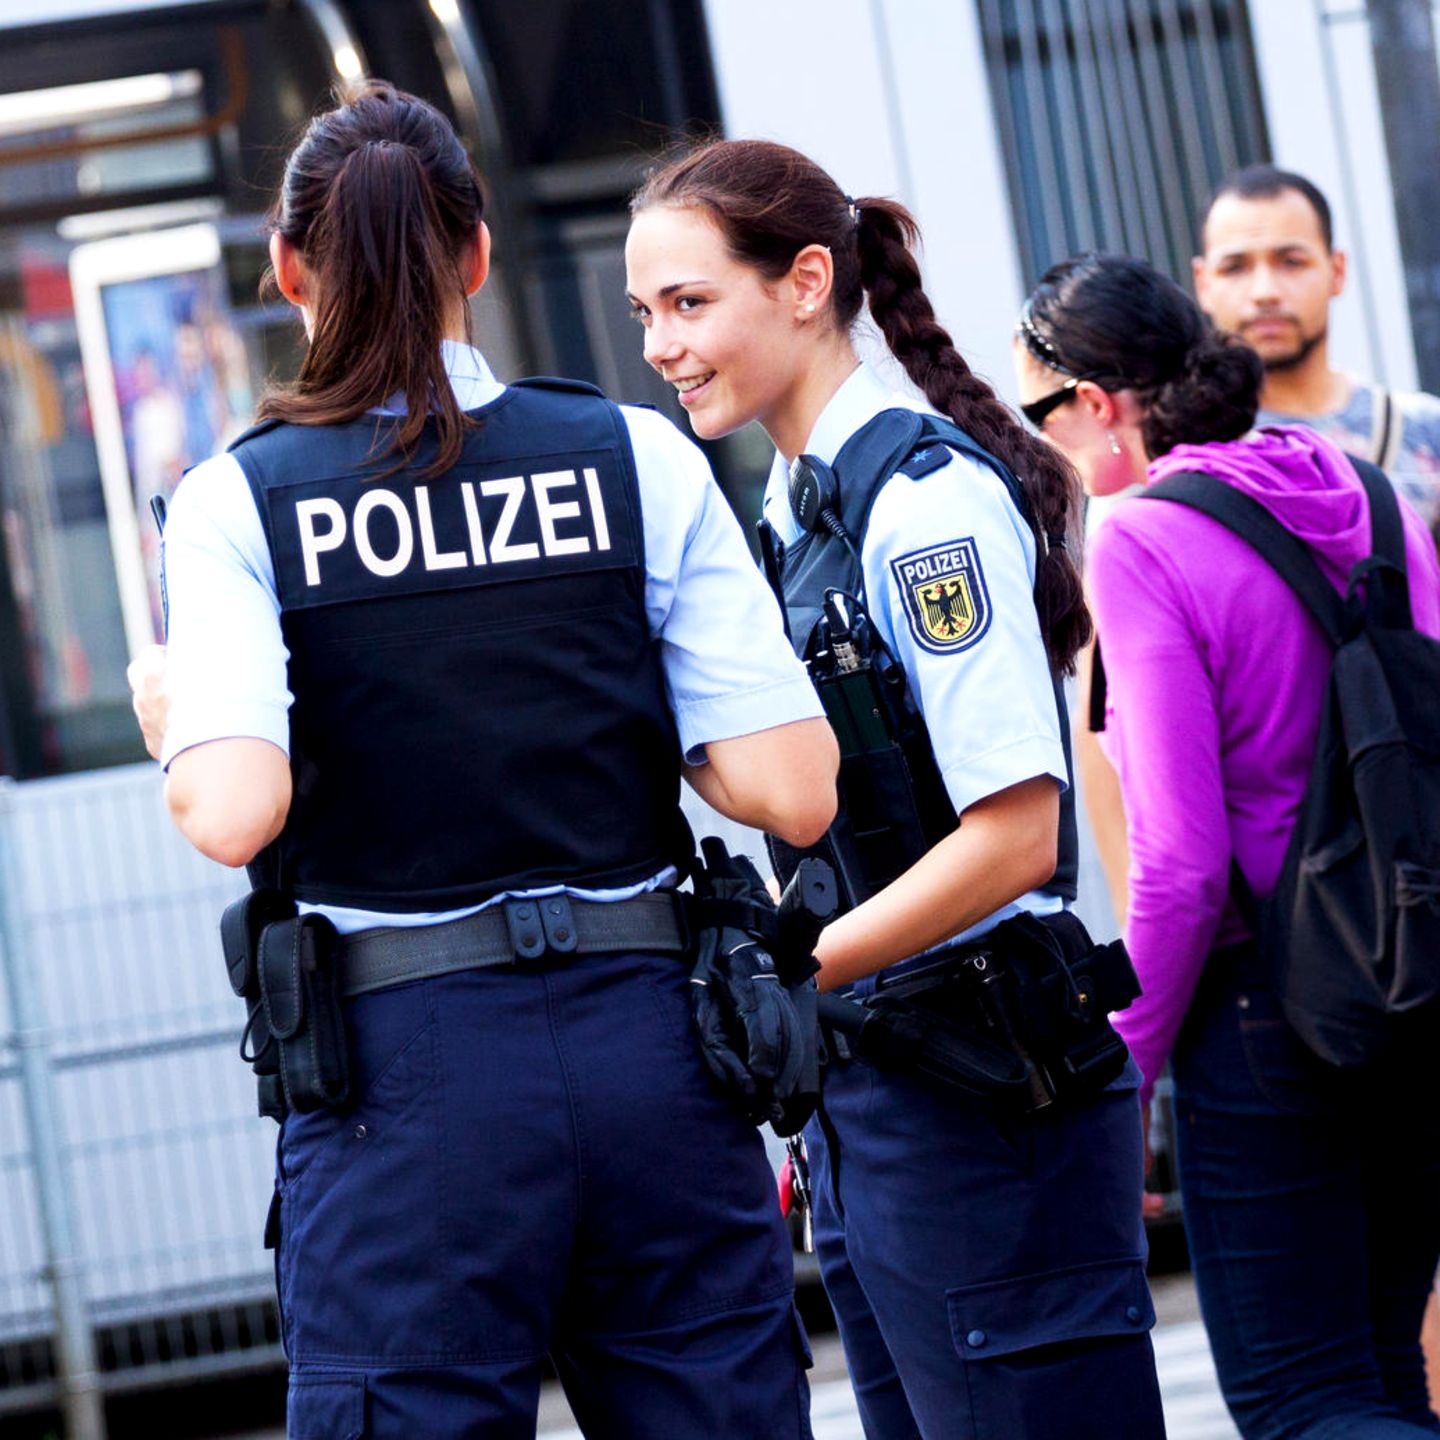 Polizei Im Verdienst Check Was Verdienen Polizisten Stern De